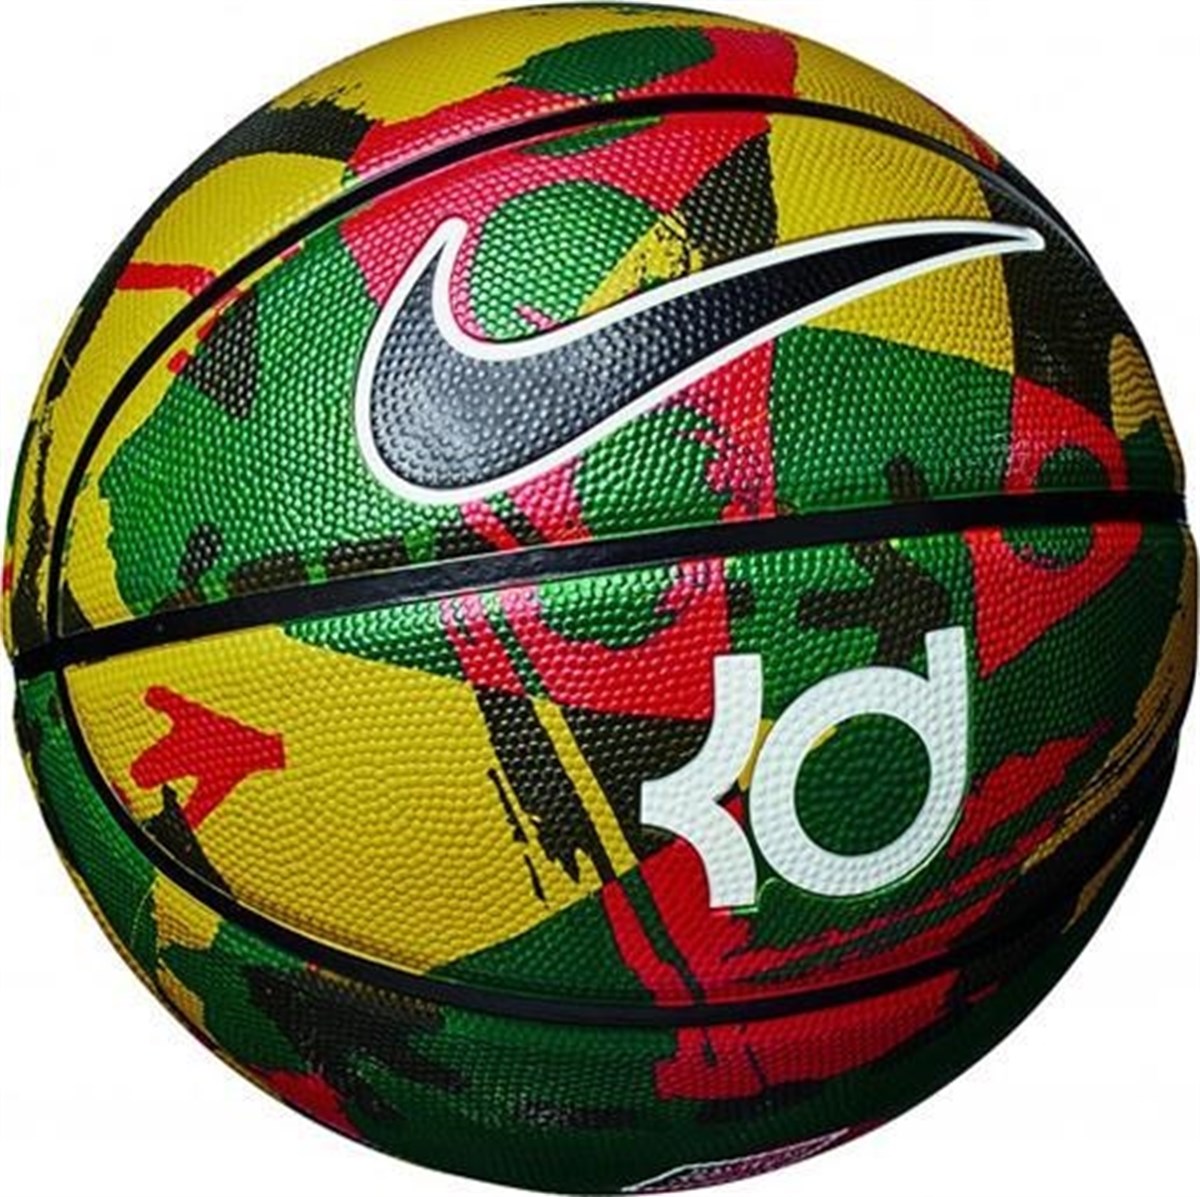 Nike Kd Playground Basketbol Topu NKI13-985